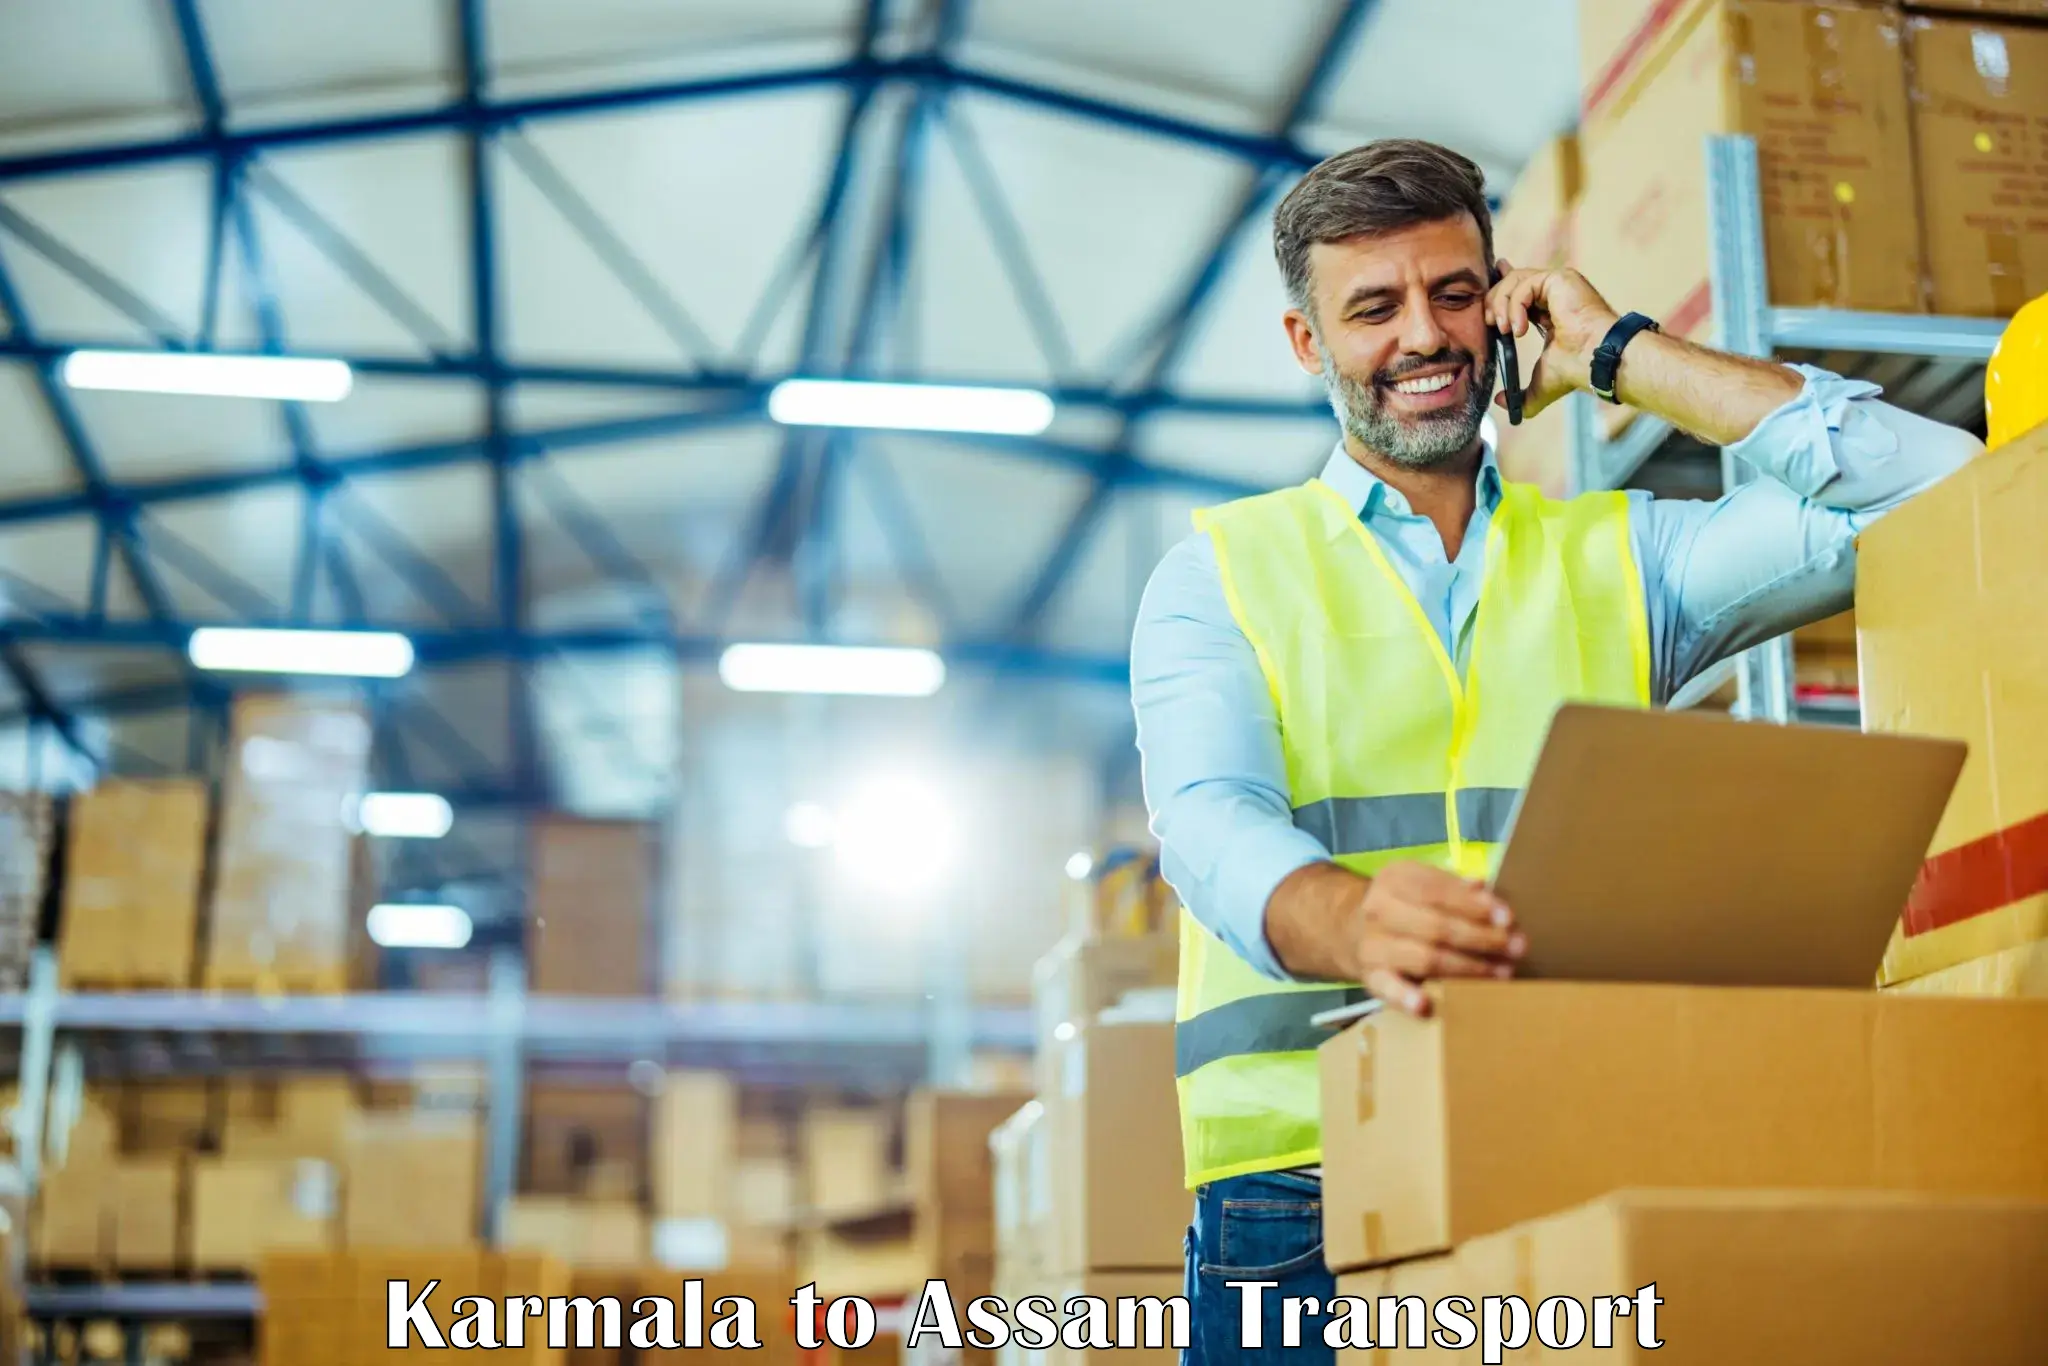 Daily parcel service transport Karmala to Assam